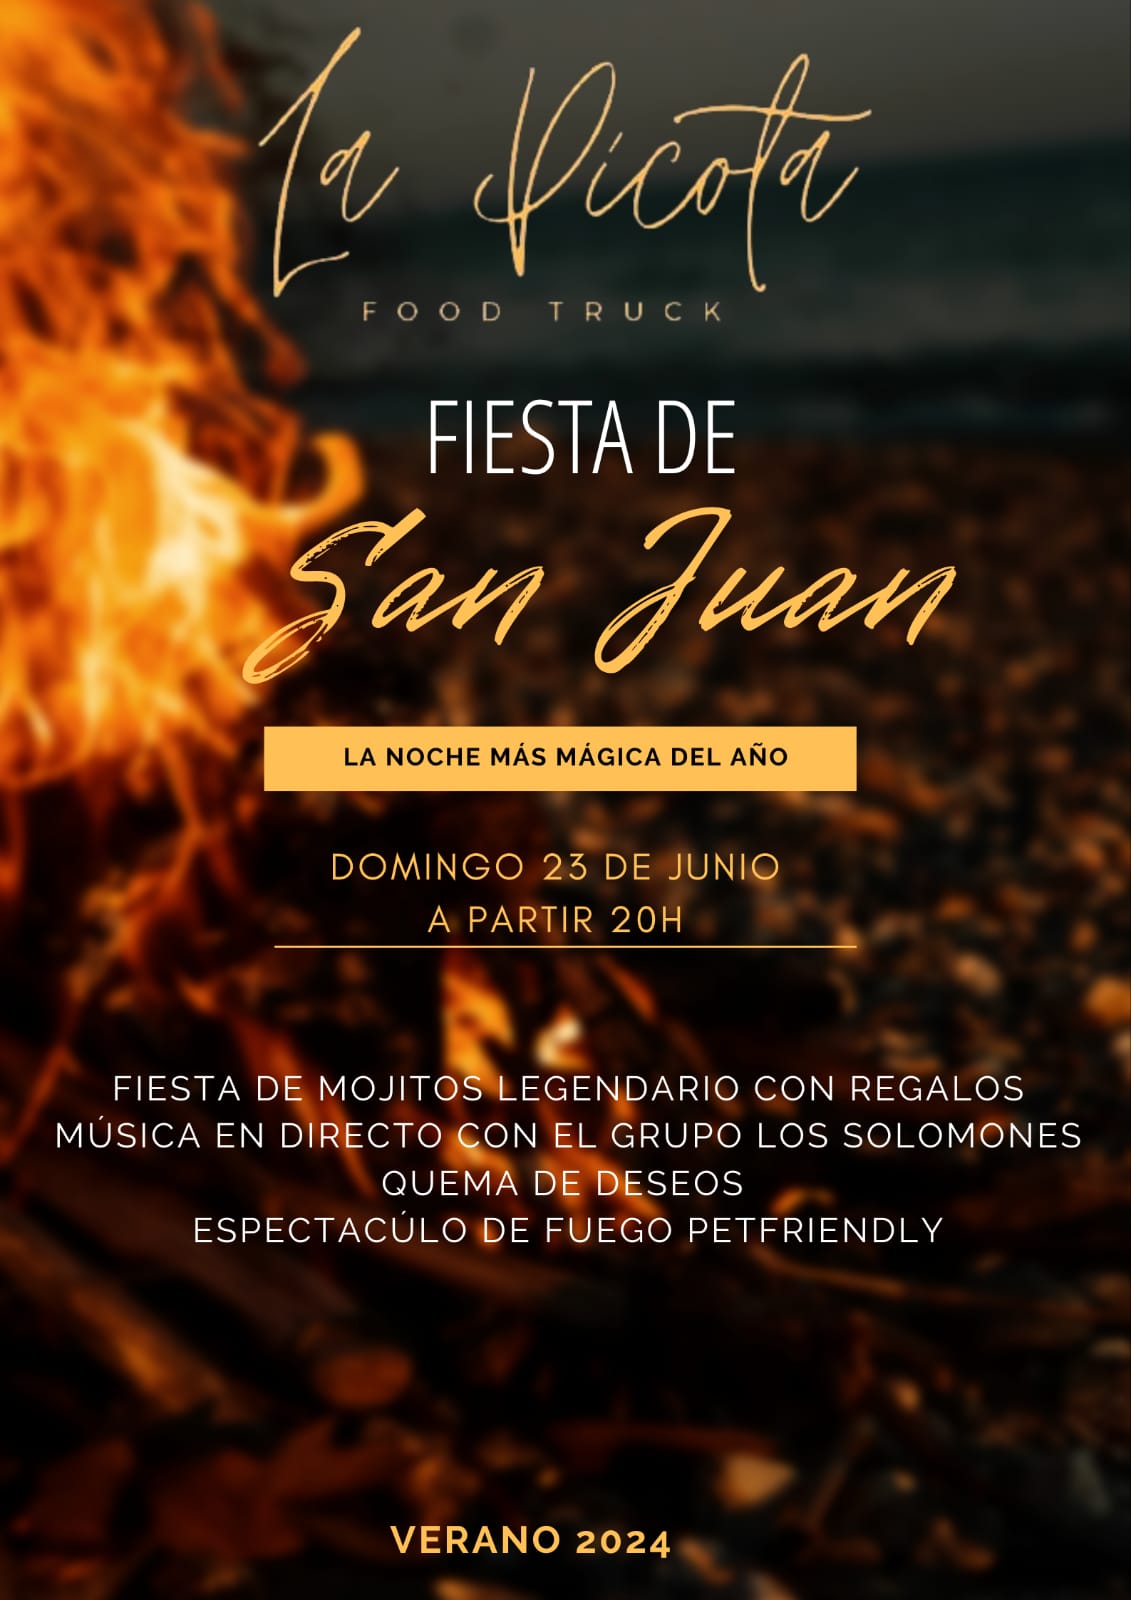 Noche de San Juan 2024 en la Terraza La Picot Food Truck con mojitos, espectáculo de fuego y Los Solomones en concierto 2